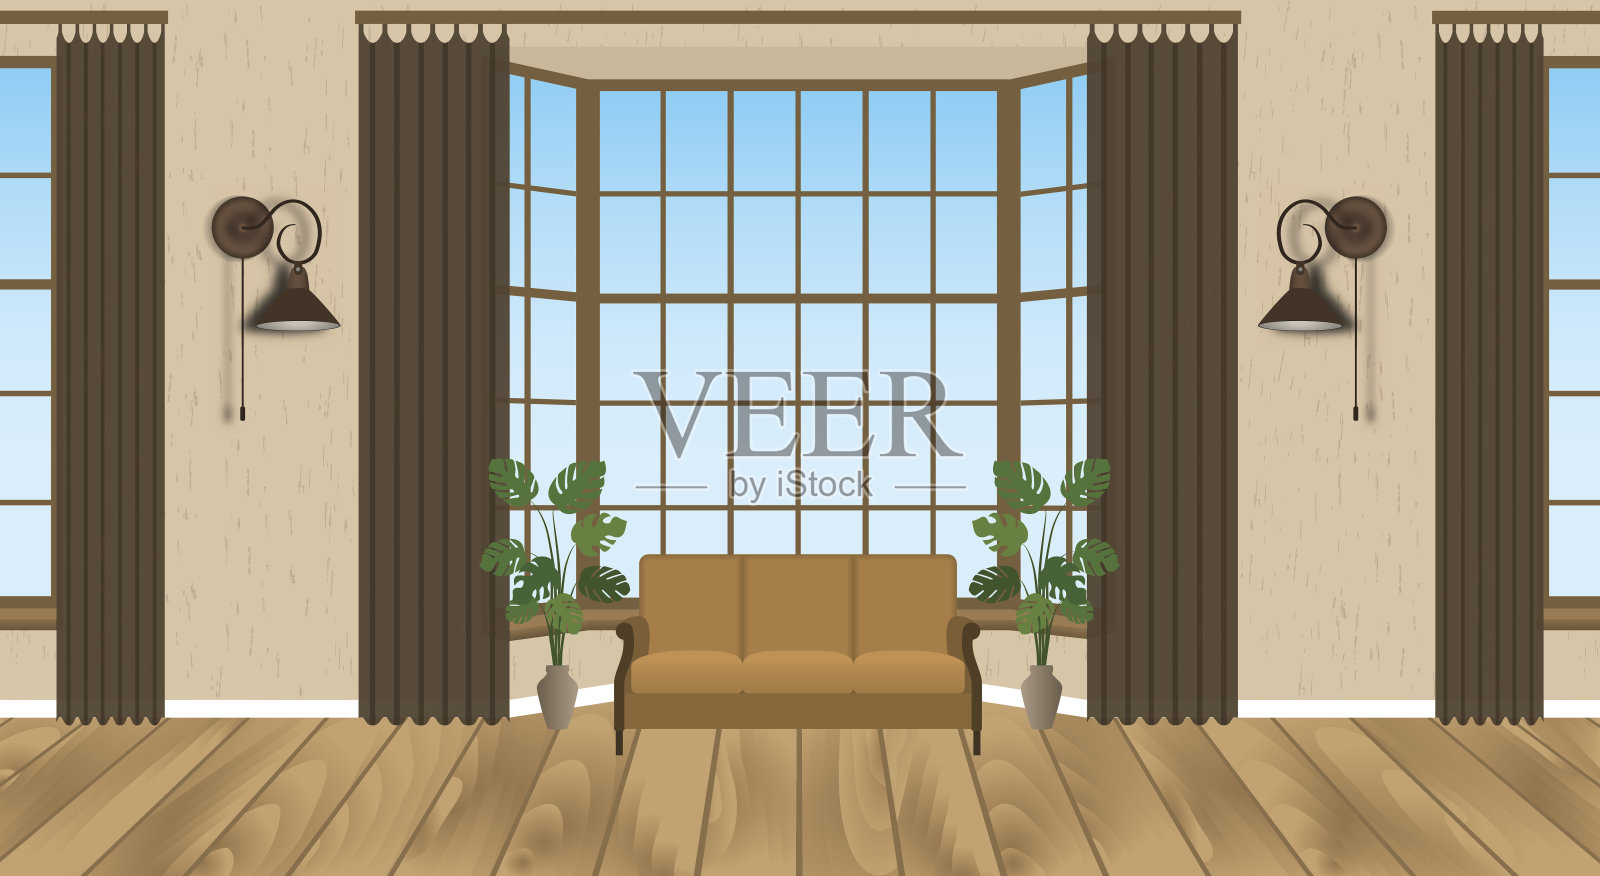 客厅室内设计现代。轻阁楼与木地板，沙发，灯具，室内植物。插画图片素材